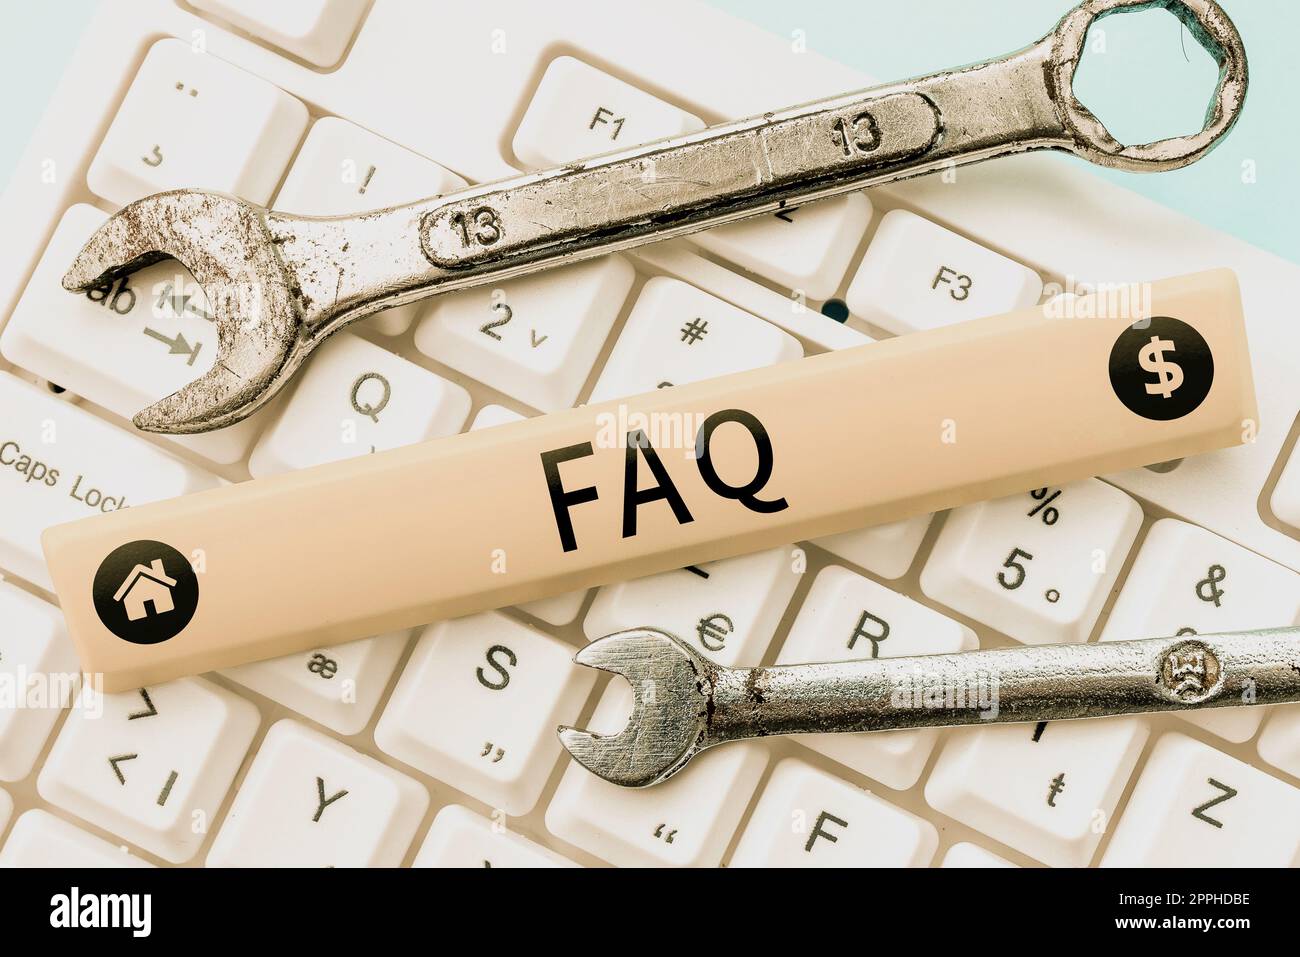 Affiche textuelle affichant la FAQ. Concept Internet liste des questions et réponses les plus fréquemment posées sur un sujet particulier Banque D'Images